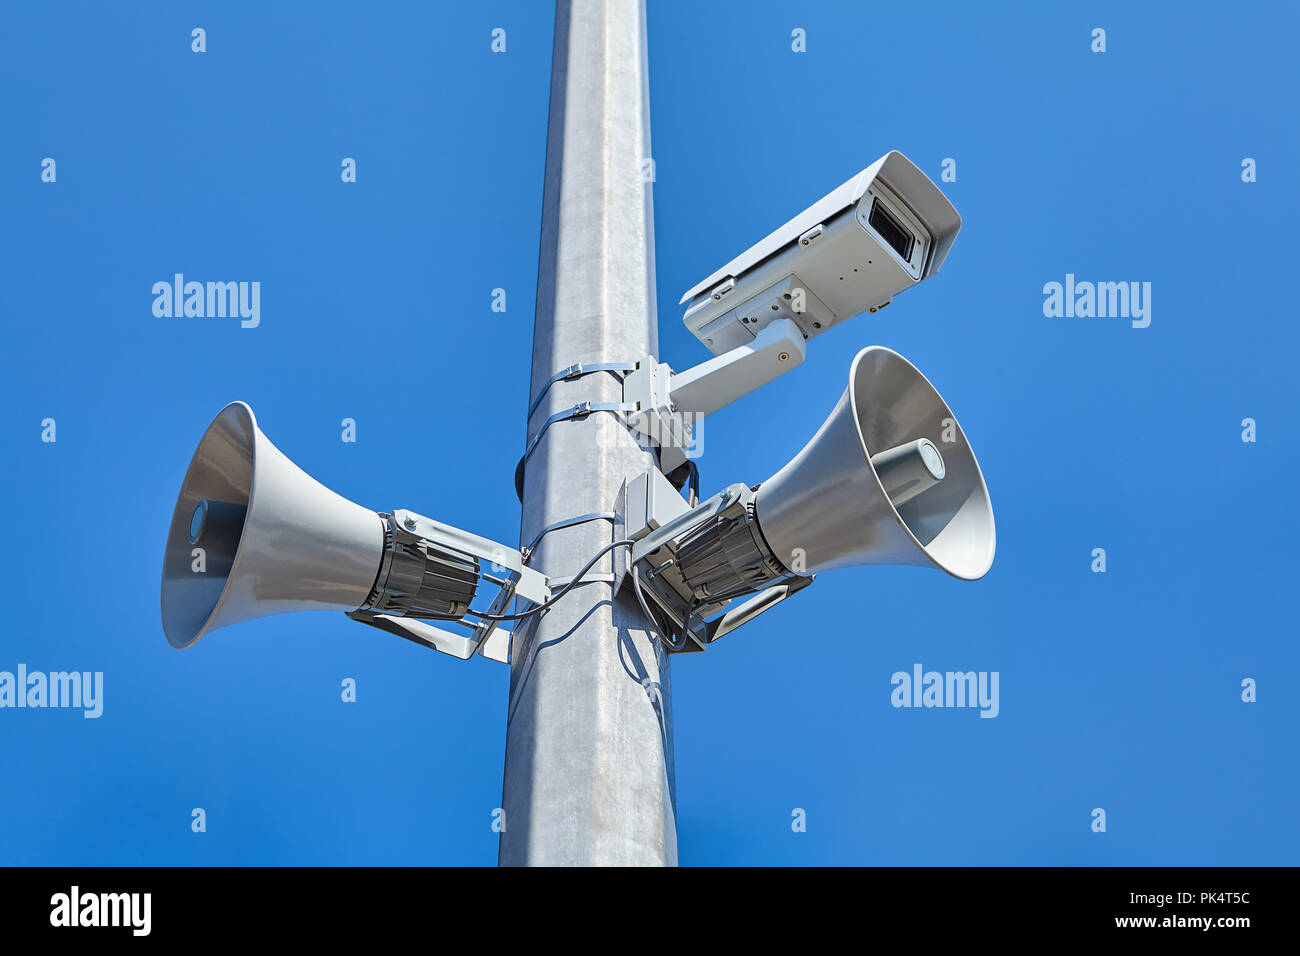 Città strada e sistema di video-sorveglianza nonché gli enti pubblici altoparlanti montati su un pilone in acciaio. Foto Stock